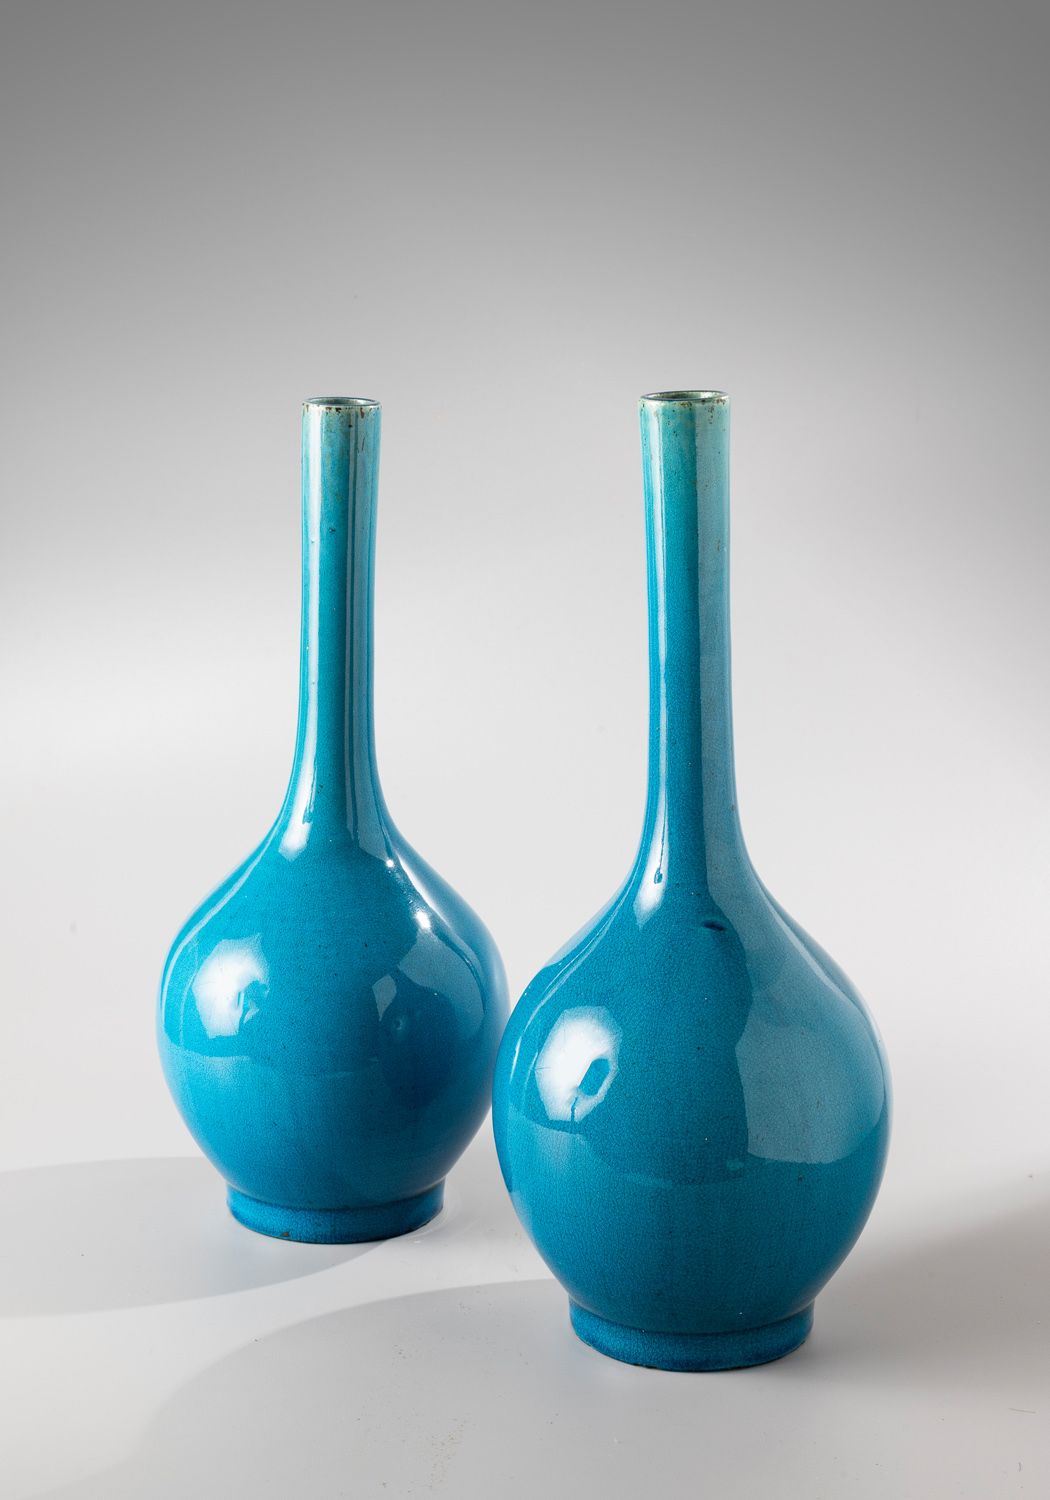 Null CHINA, 18. Jahrhundert

Türkisblau glasierte Keramikflaschenvase mit langem&hellip;